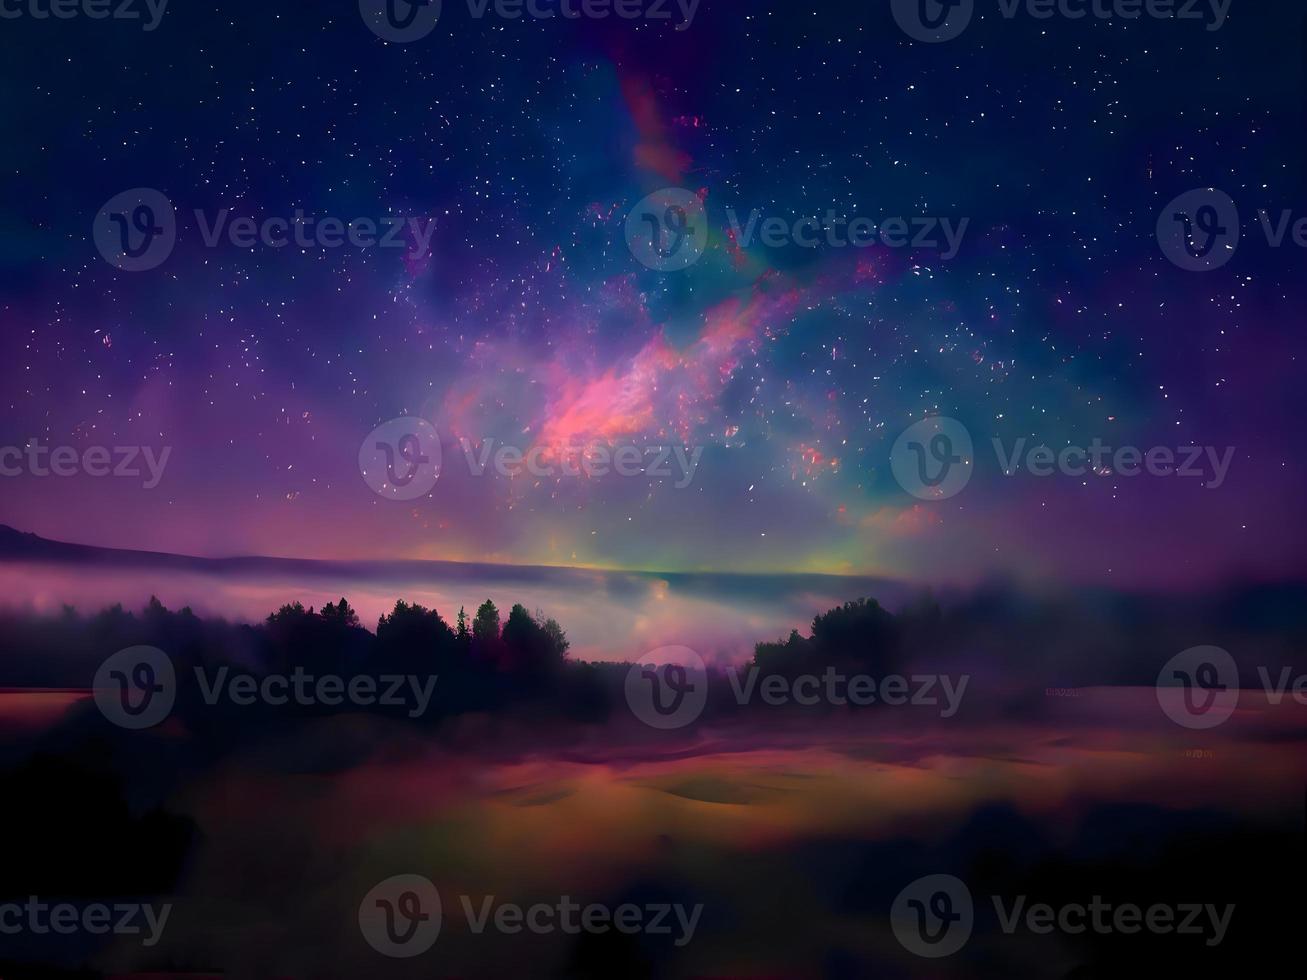 Nachtlandschaft Berg und Milkyway Galaxienhintergrund, Langzeitbelichtung, schwaches Licht foto